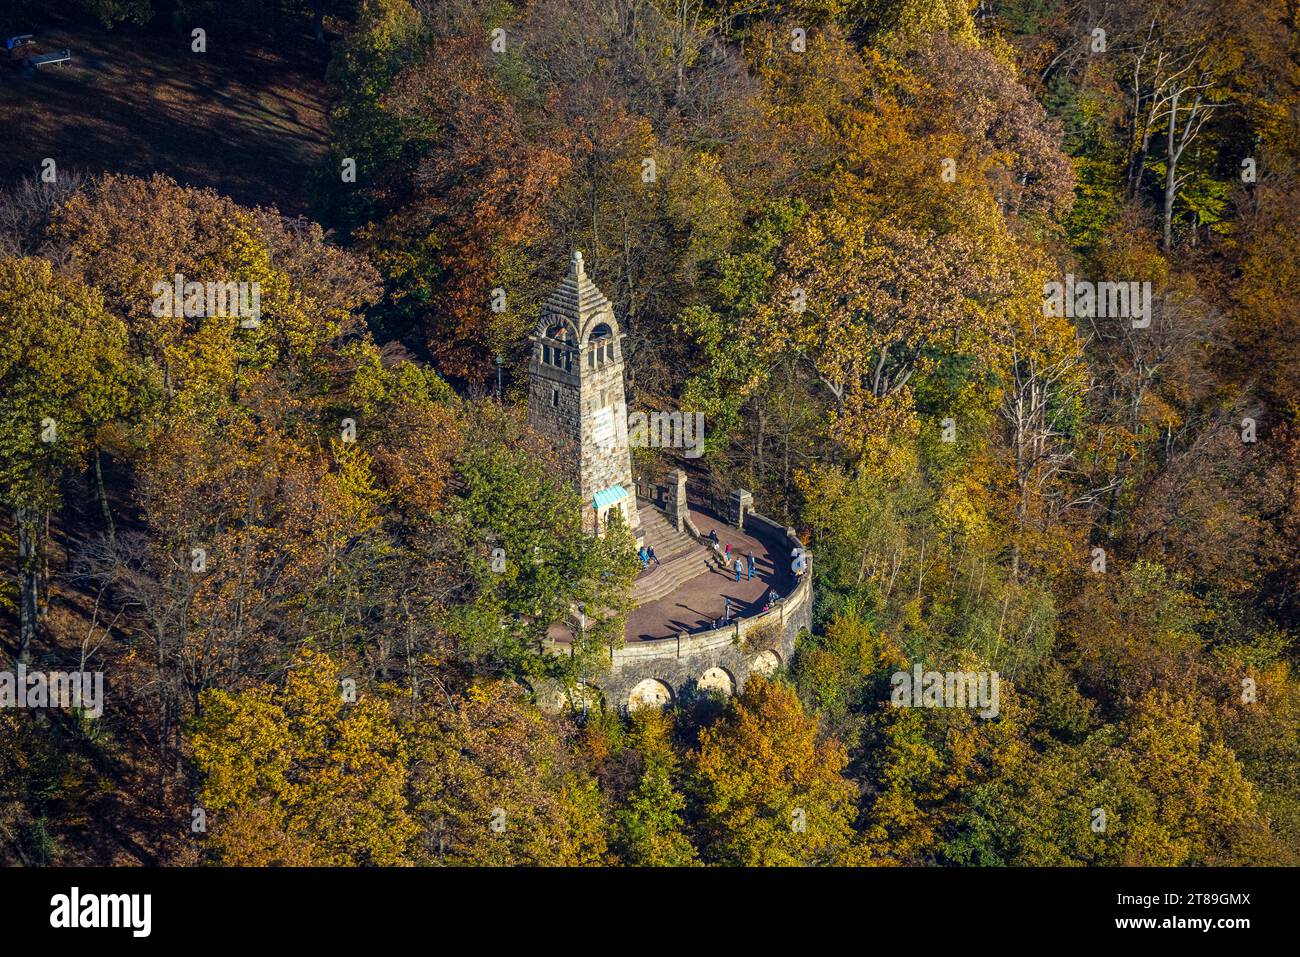 Vue aérienne, zone de loisirs locale Hohenstein, visiteurs au monument de montagne dans la forêt d'automne avec des arbres à feuilles caduques aux couleurs vives de l'automne, Banque D'Images